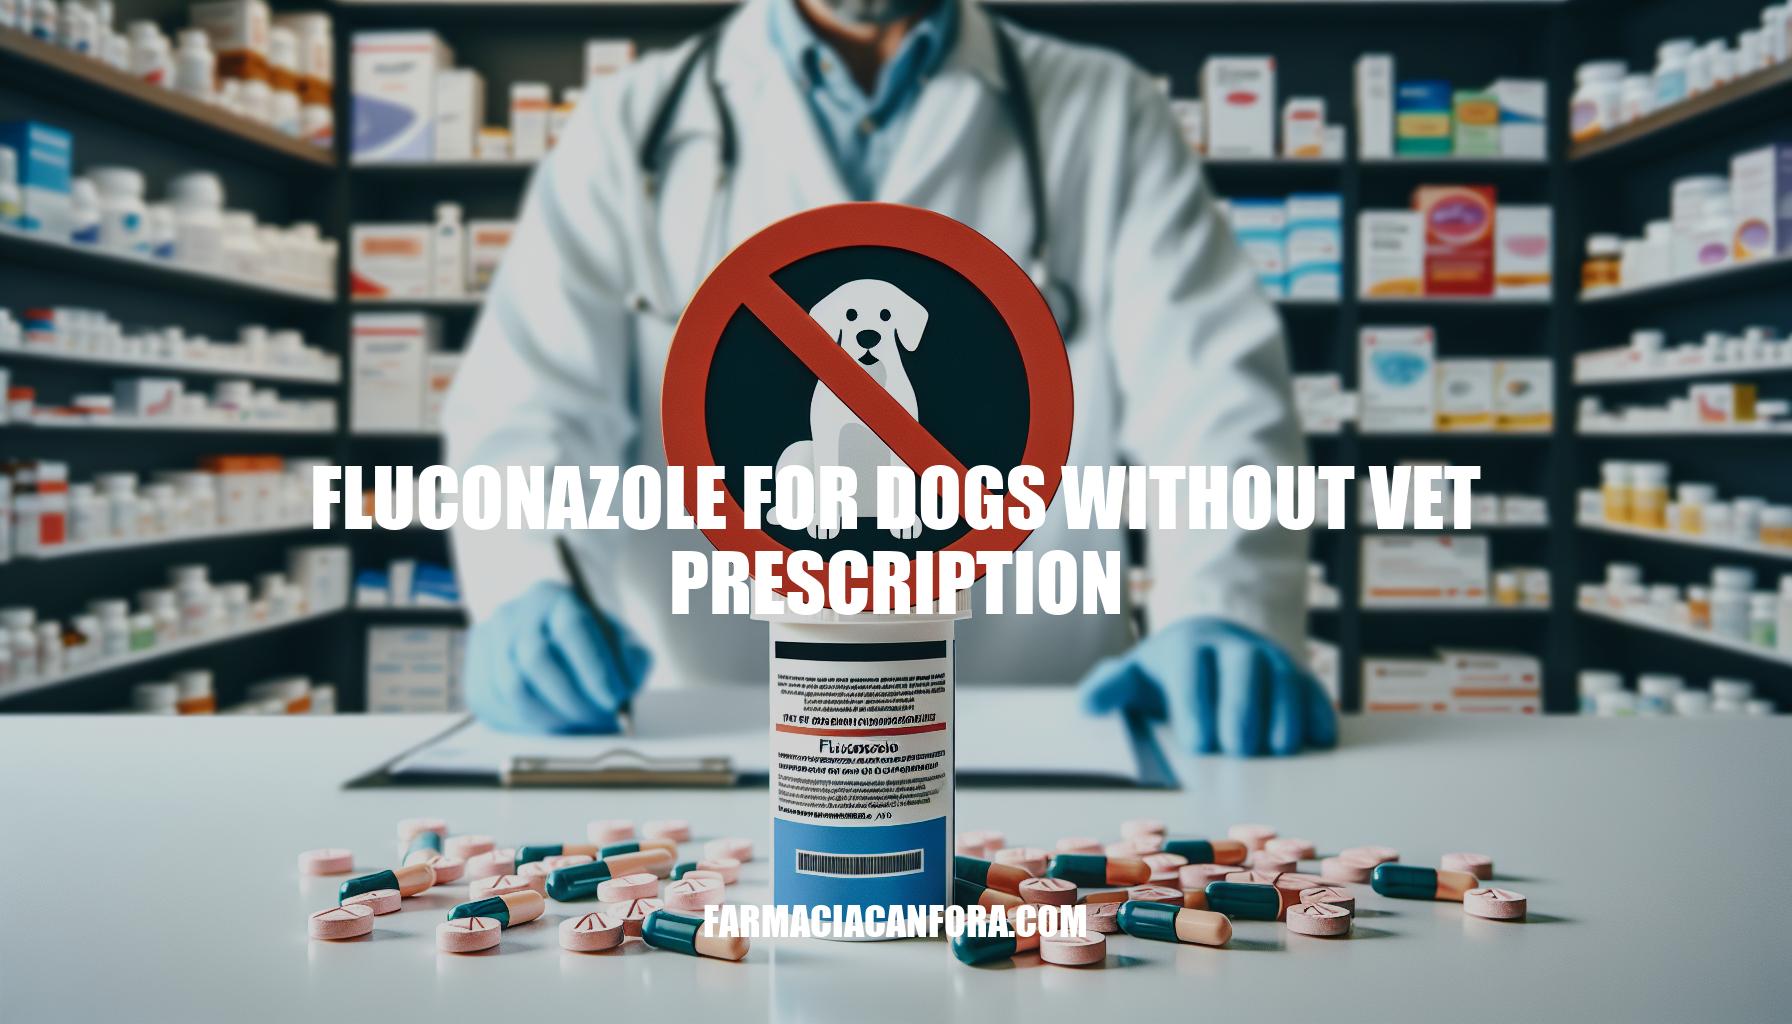 Using Fluconazole for Dogs Without Vet Prescription